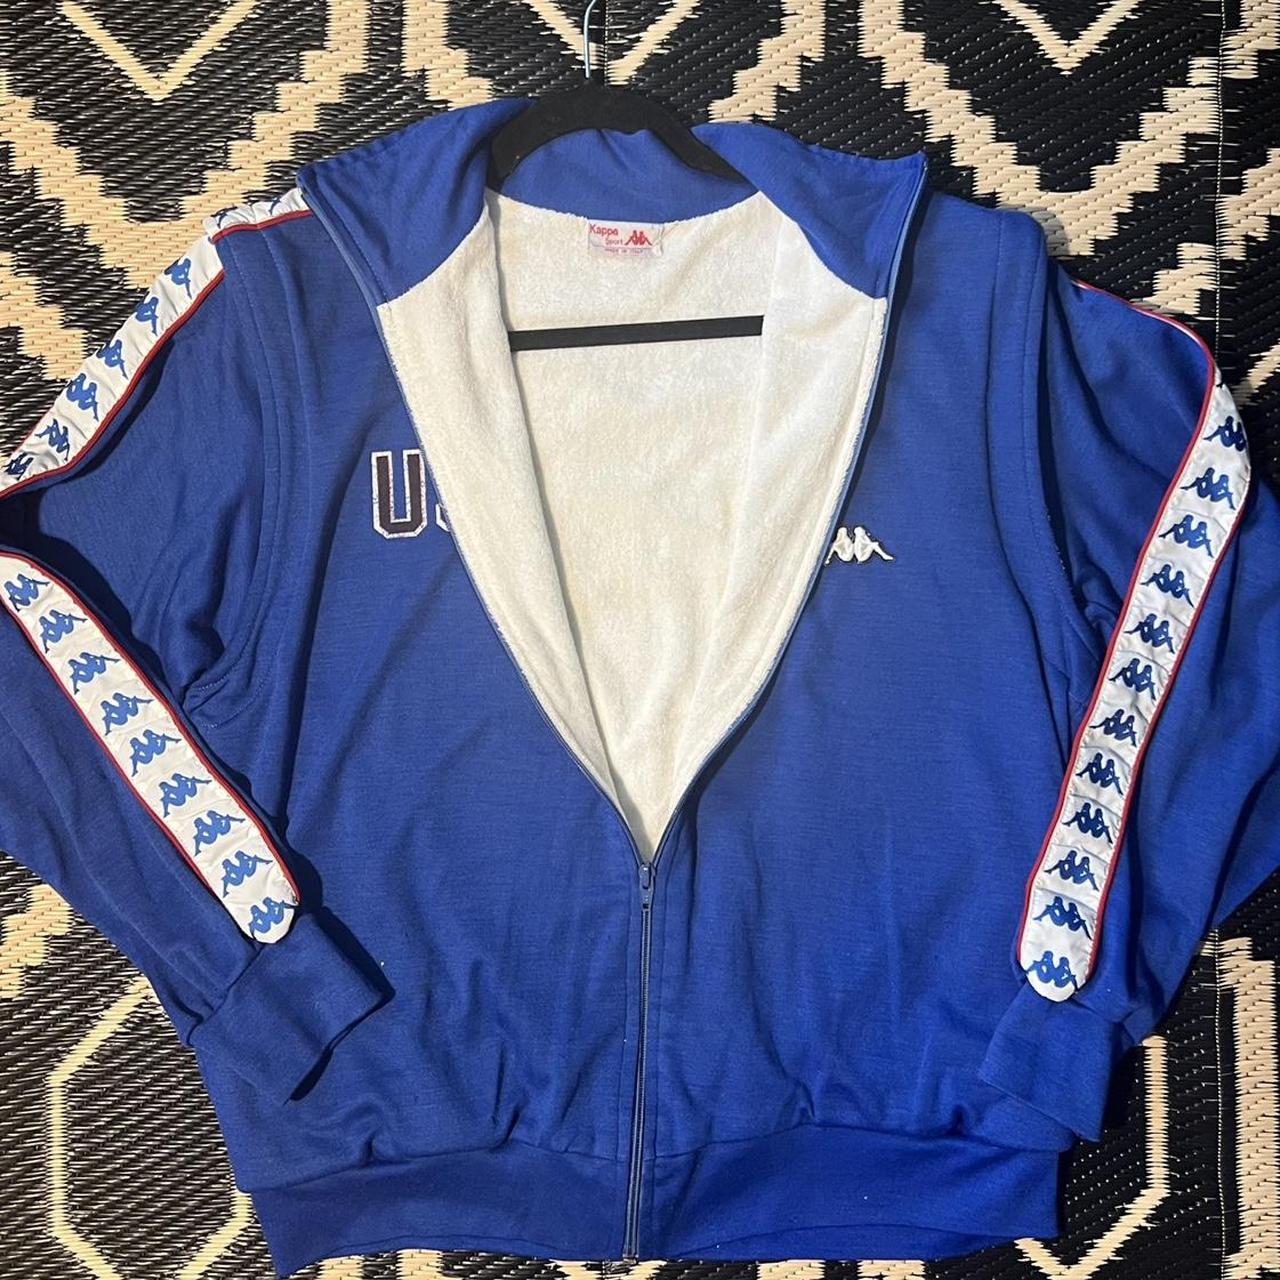 Vintage Kappa Track Jacket 1984 Los Angeles Olympics... - Depop